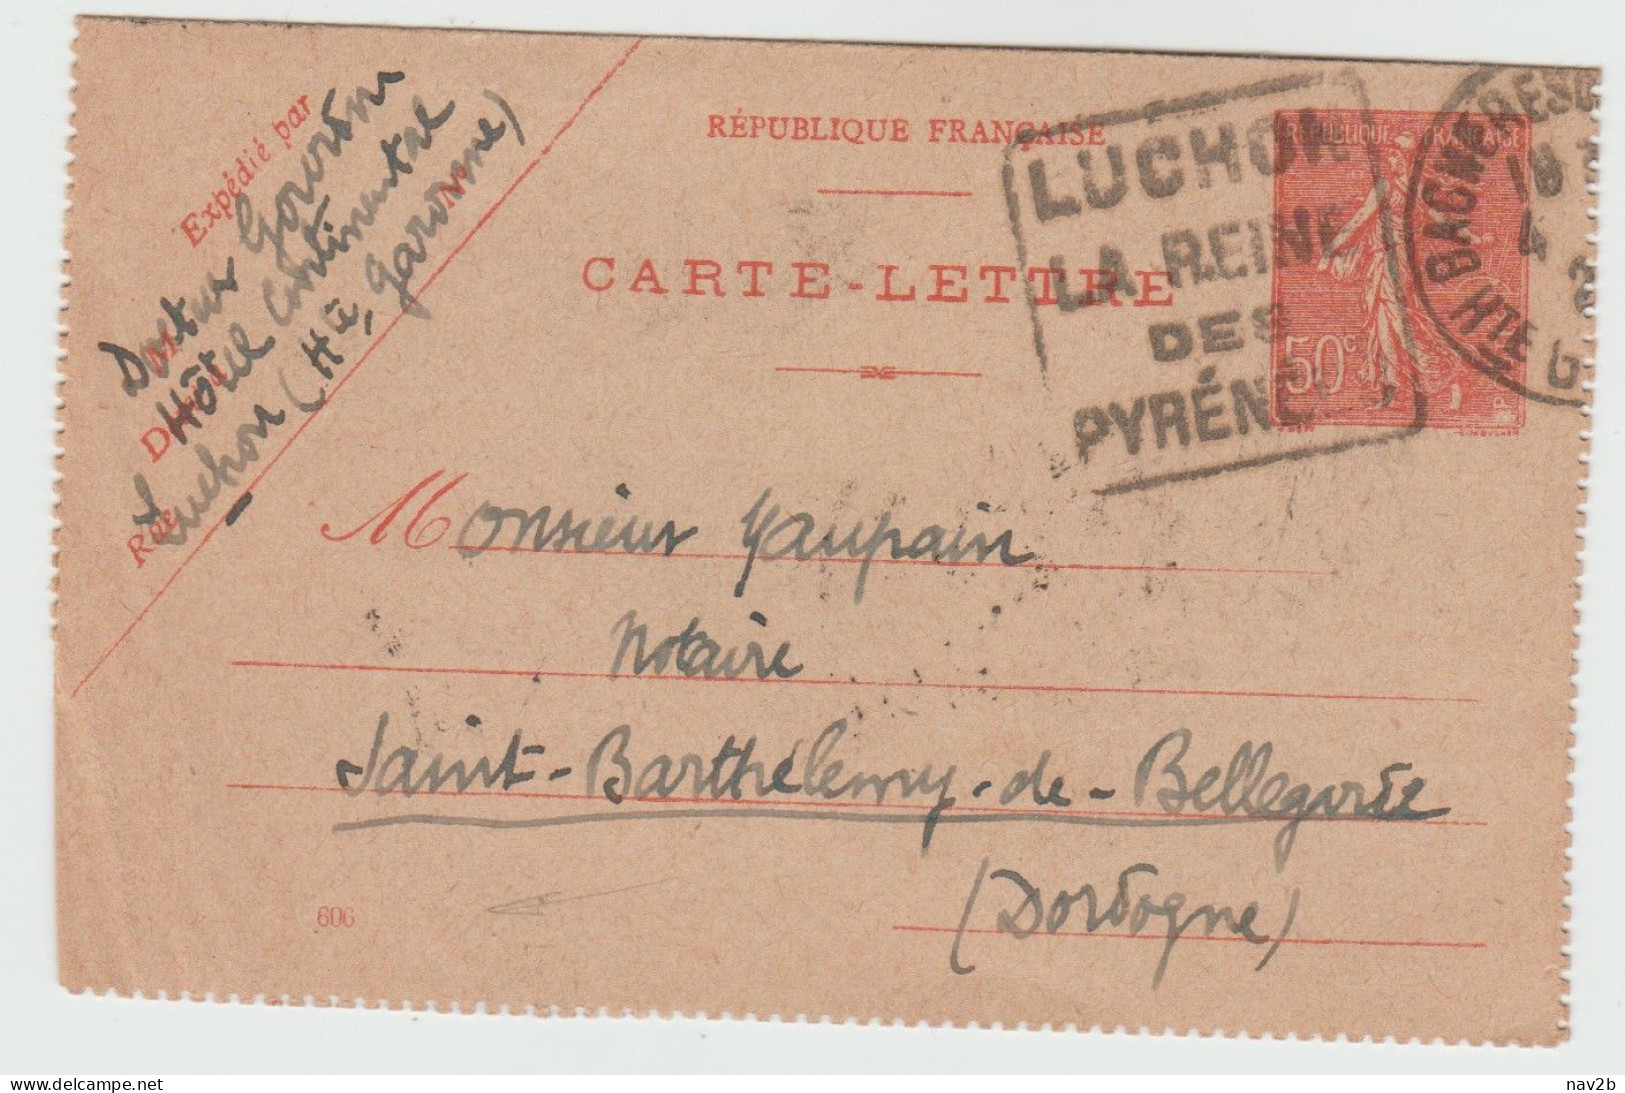 Carte Lettre Semeuse 50cts .  Oblitération Daguin Luchon . Cachet Arrivée De St Barthelemy De Bellegarde . 1929 - Cartes-lettres